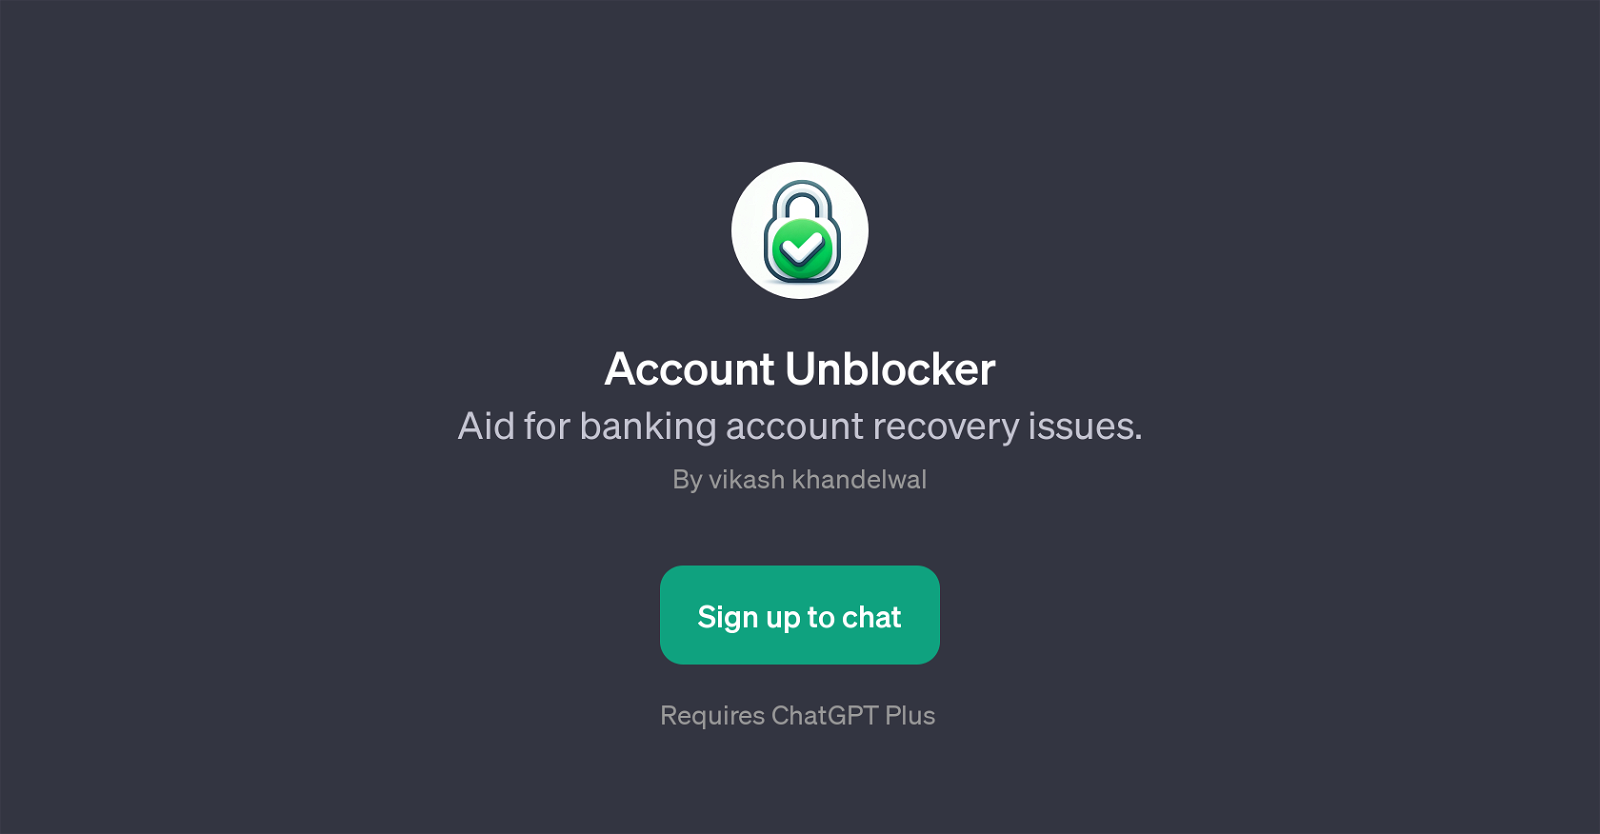 Account Unblocker website